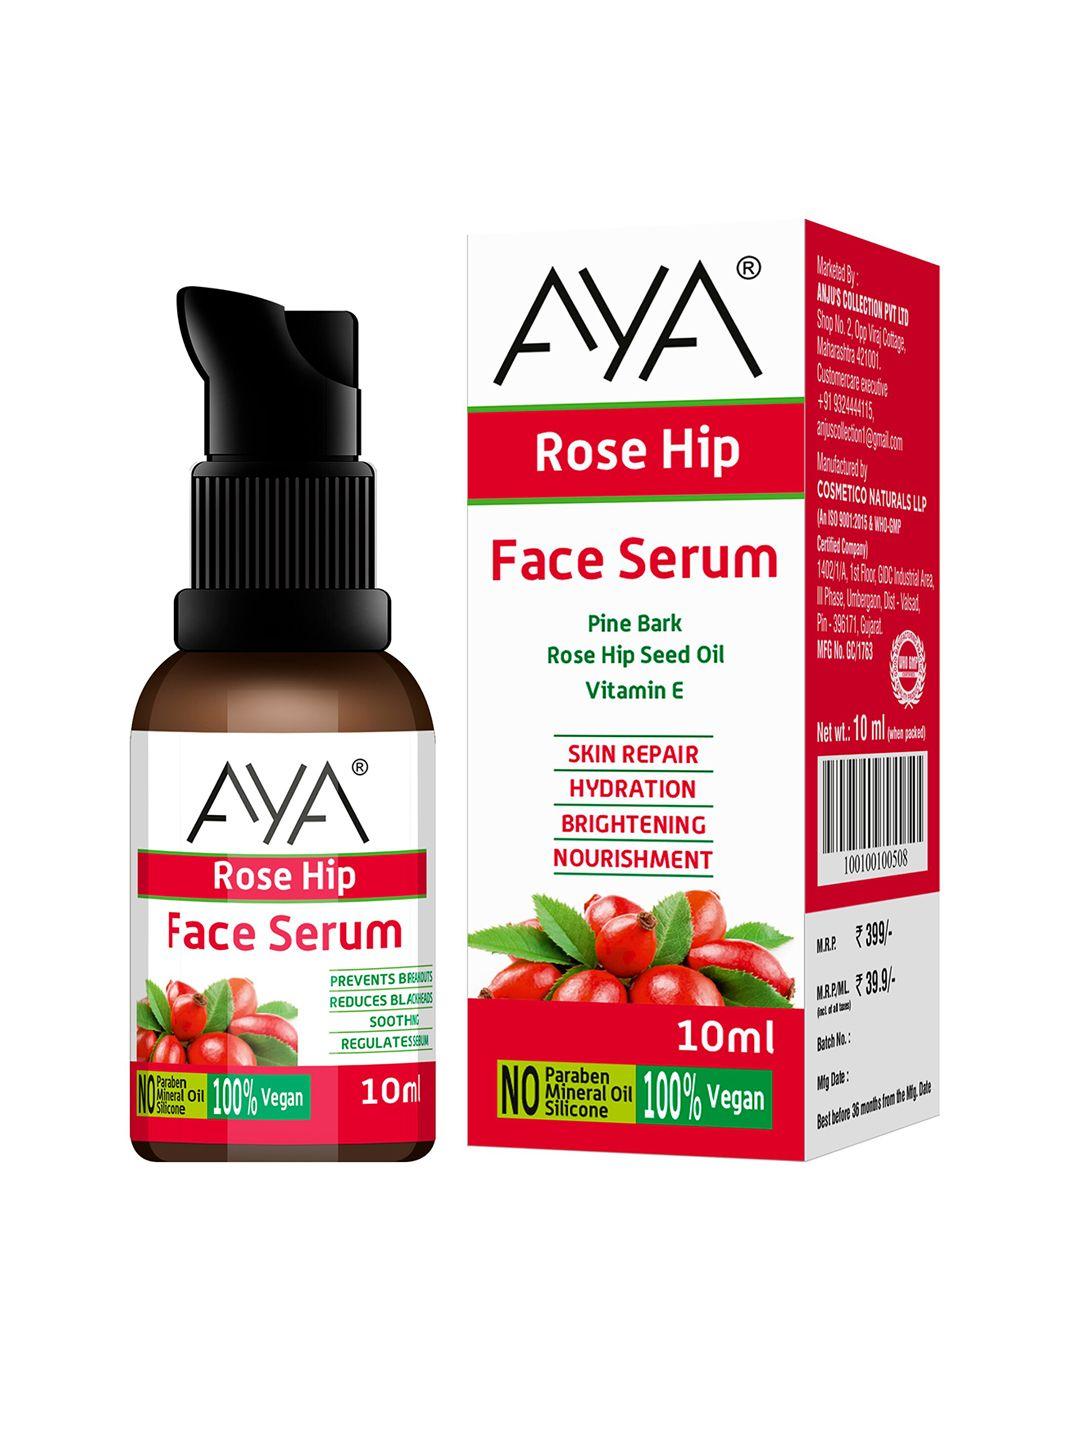 aya rosehip face serum for skin brightening and nourishment - 10ml